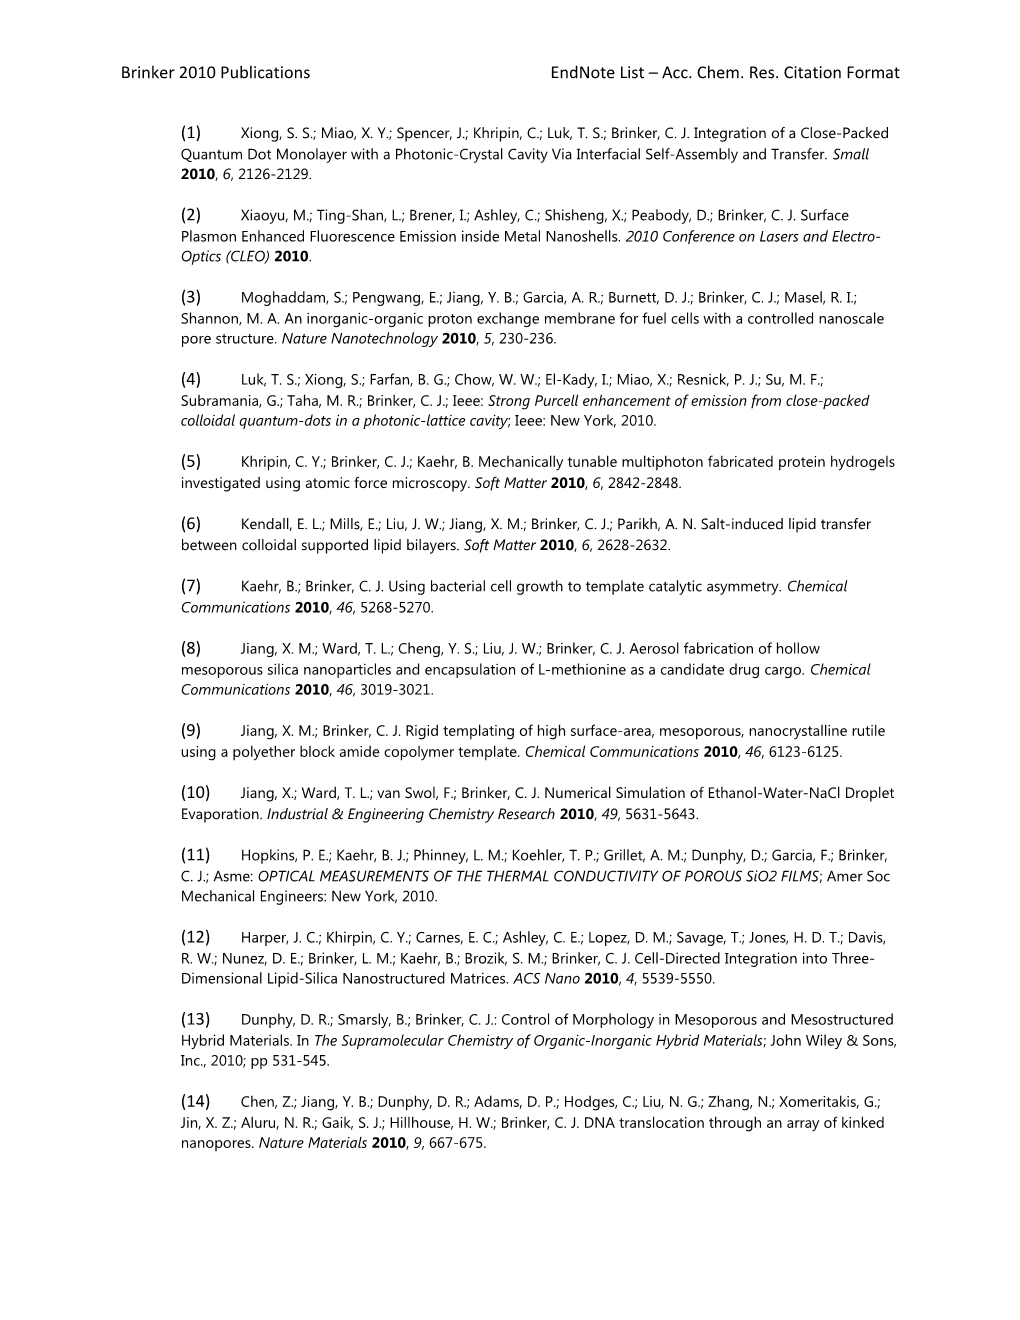 Brinker 2010 Publications Endnote List Acc. Chem. Res. Citation Format